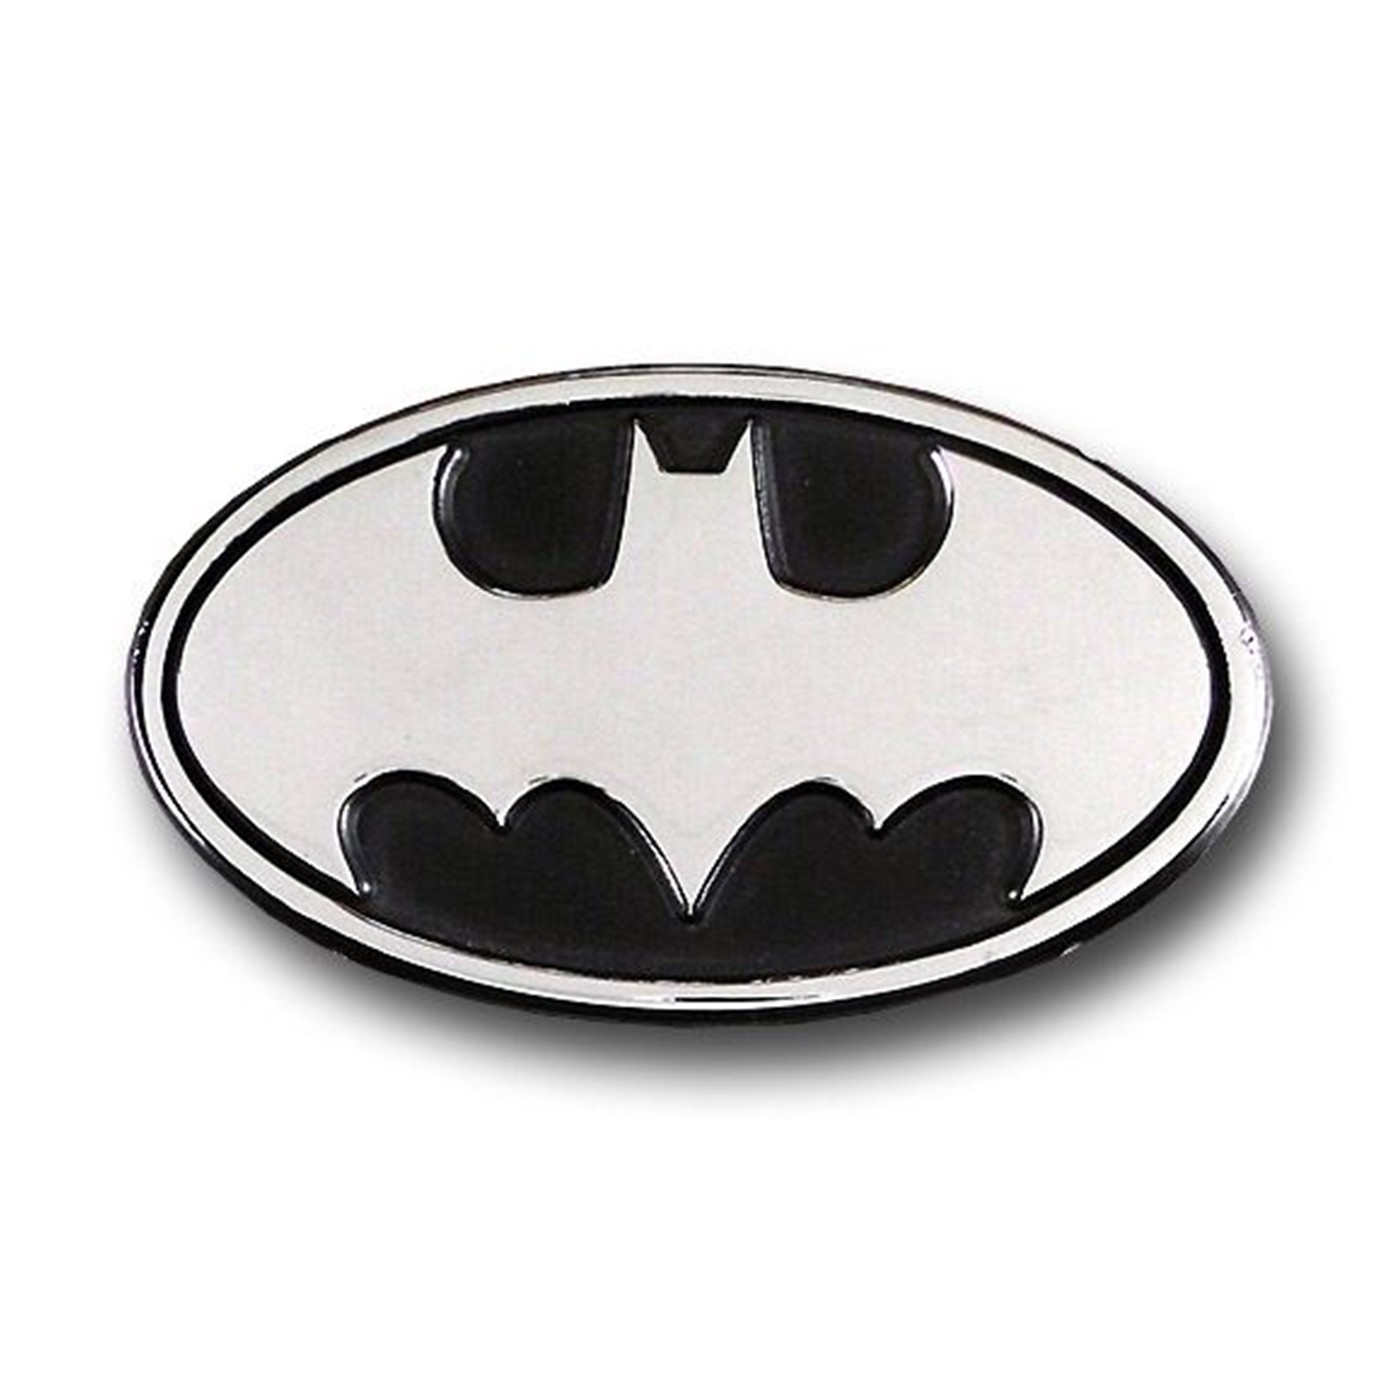 Batman Oval Symbol Chrome Adhesive Car Emblem